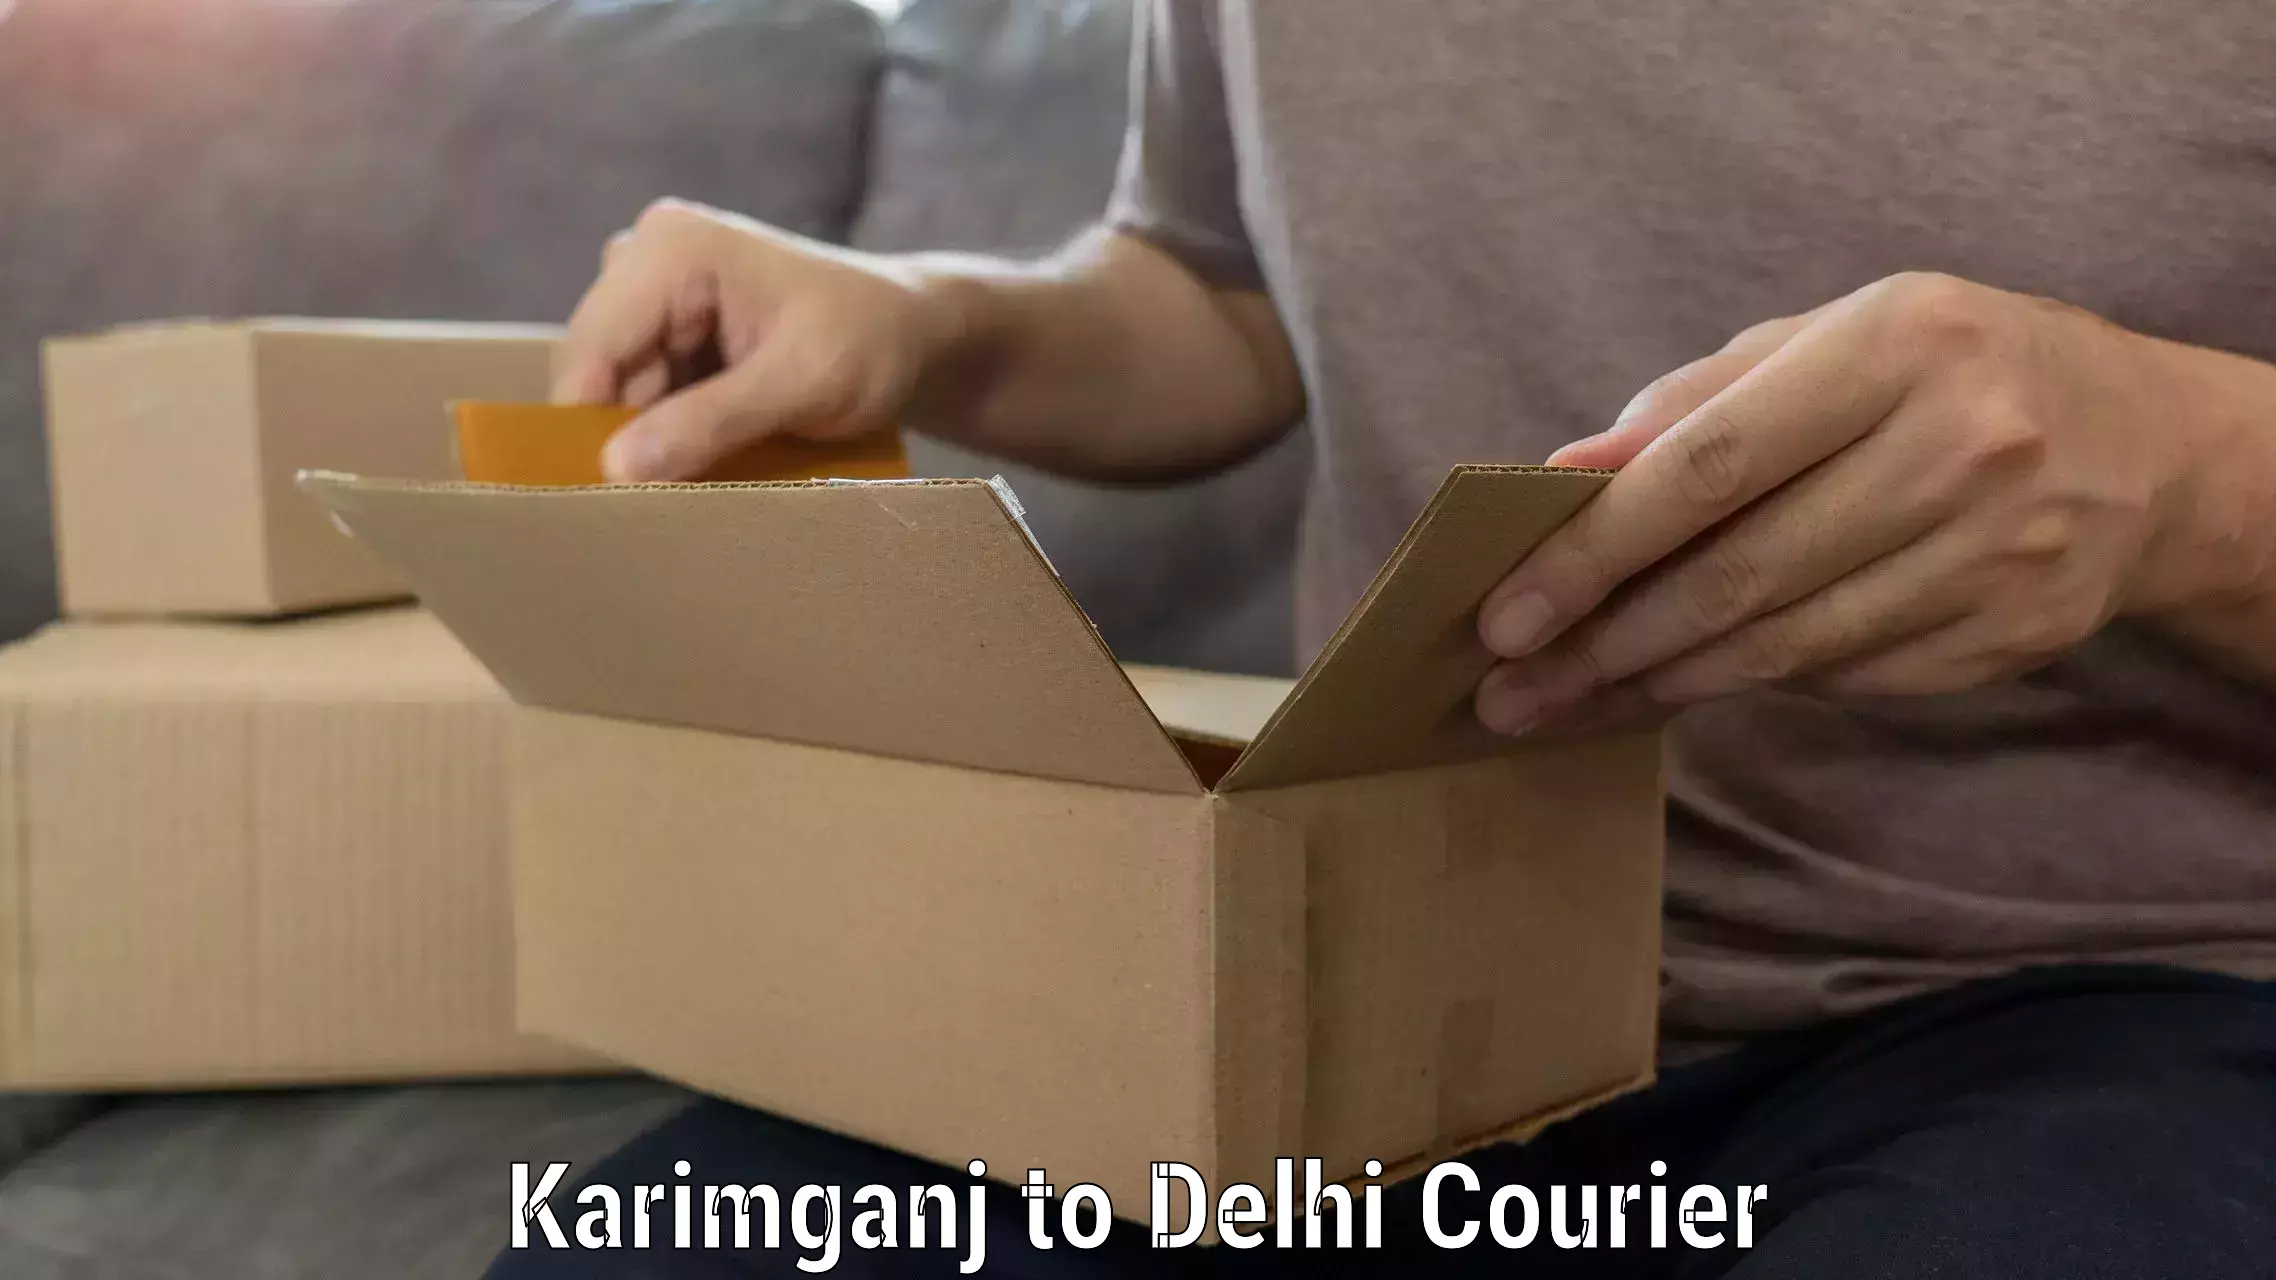 Moving and packing experts Karimganj to Subhash Nagar